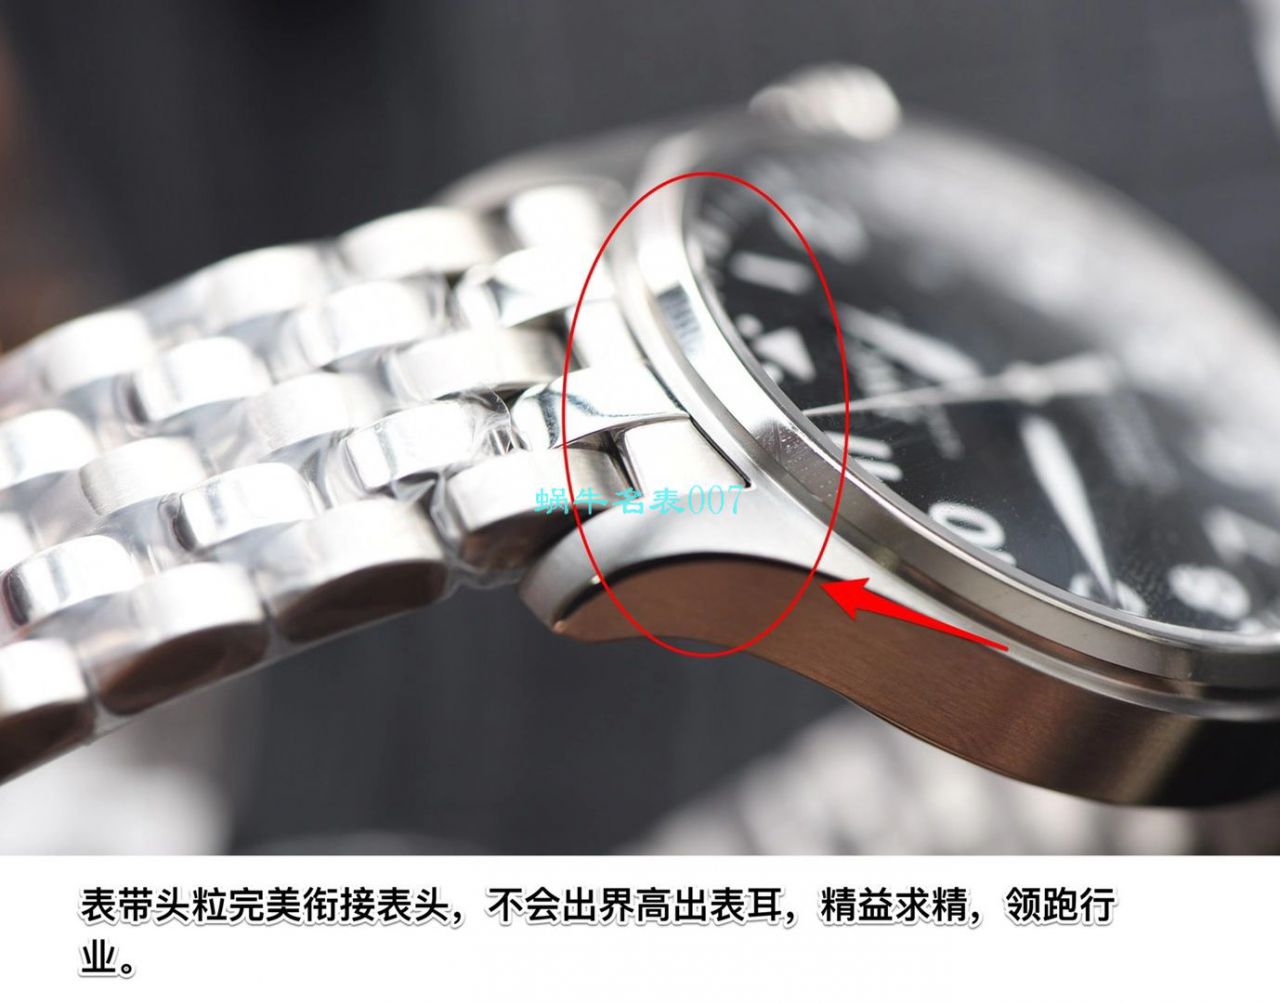 【视频评测】V7厂万国马克十八钢带款IW327002腕表 